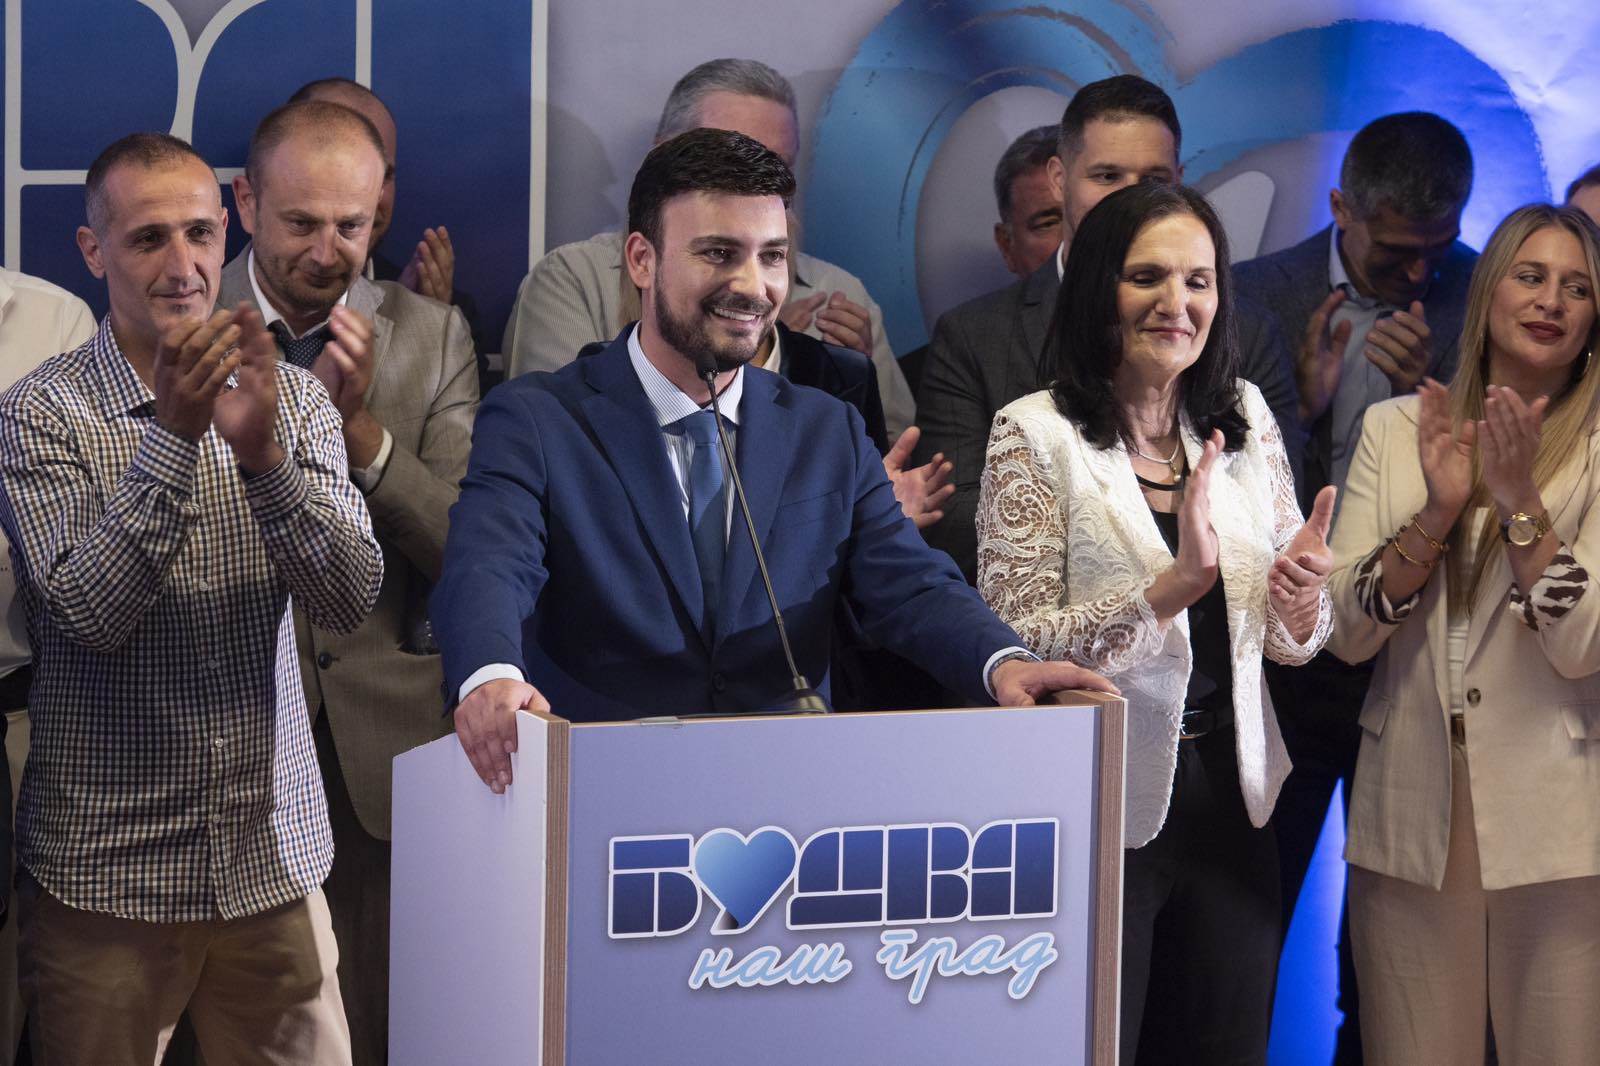  Završena konvencija izborne liste "Budva naš grad - Nikola Jovanović 